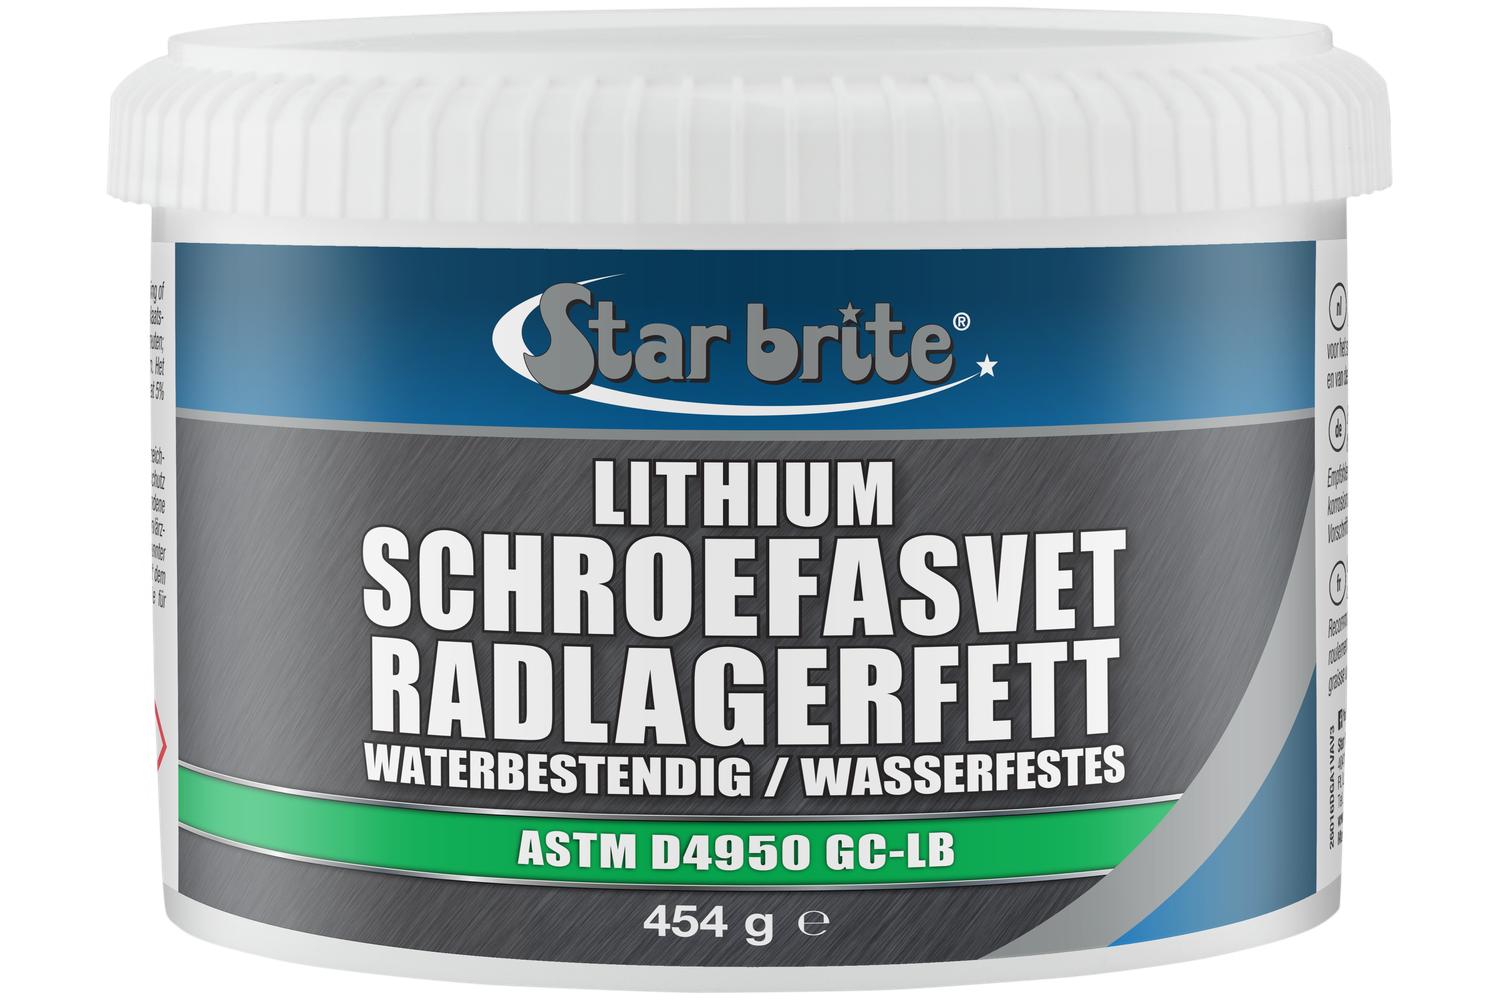 Starbrite Lithium Waterbestendig Schroefasvet 453 g